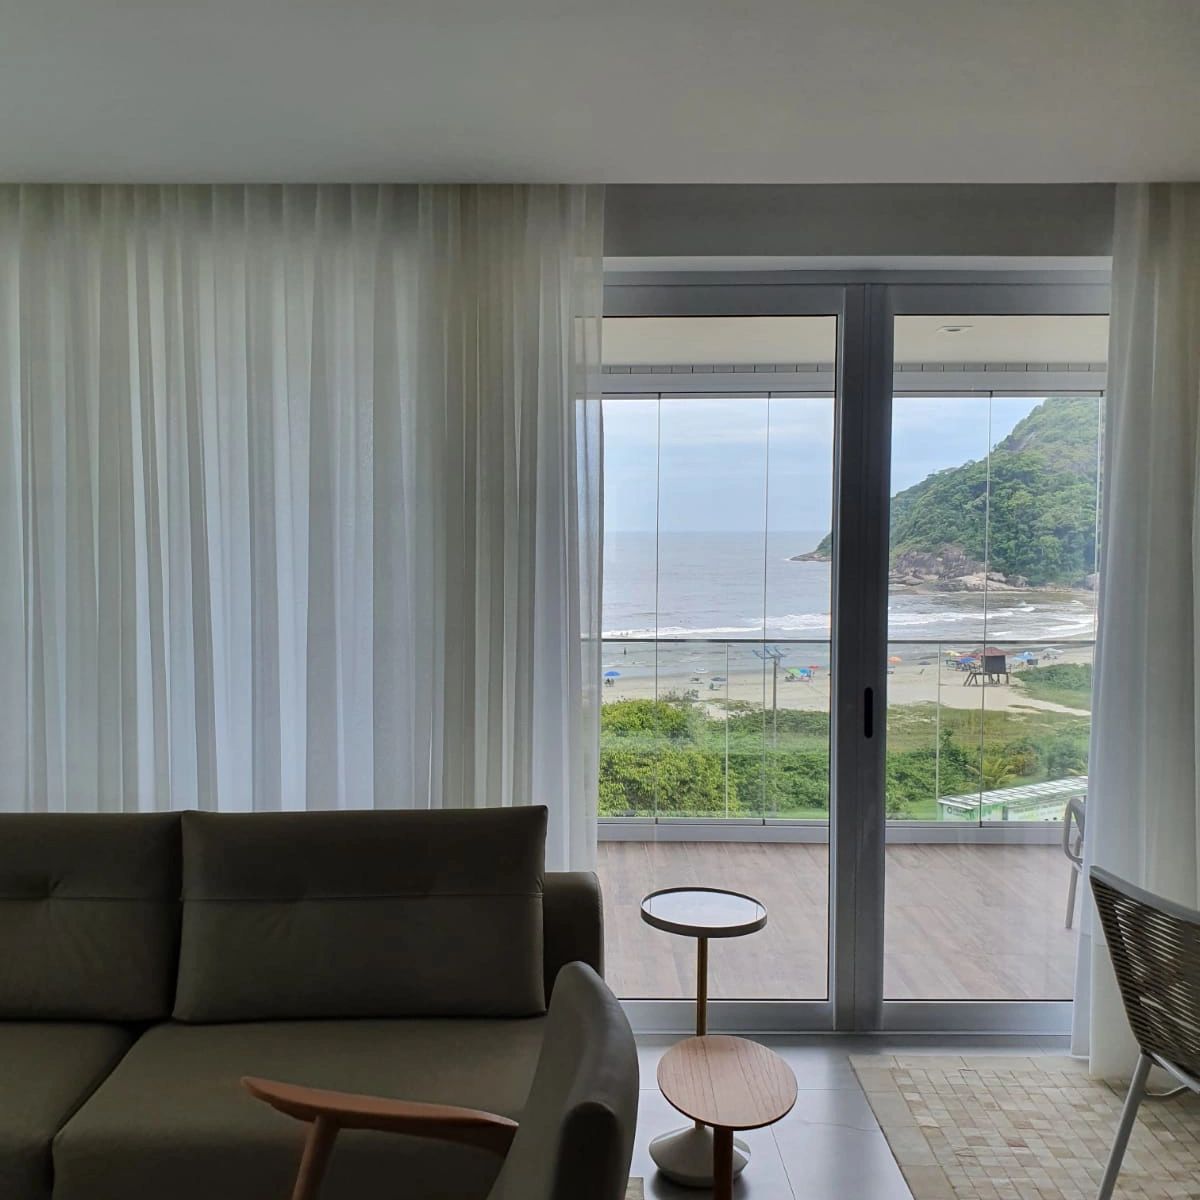 Ambiente com vista para o mar, com cortinas brancas, sofá e poltrona cinza. Cortina wave em gaze.